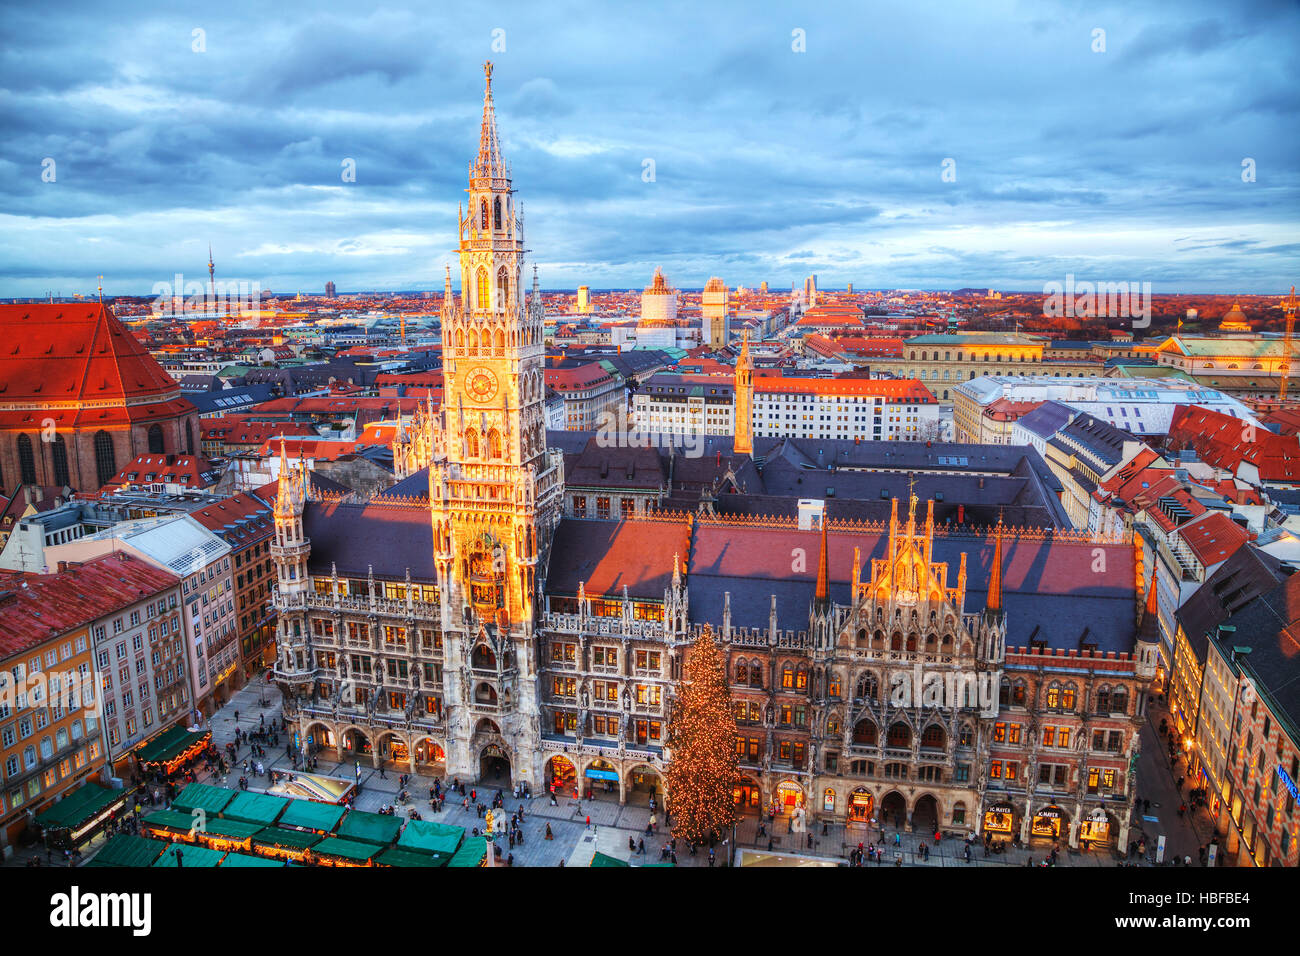 München - NOVEMBER 30: Luftaufnahme des Marienplatz am 30. November 2015 in München. Es ist die 3. größte Stadt in Deutschland, nach Berlin und Hamburg Stockfoto